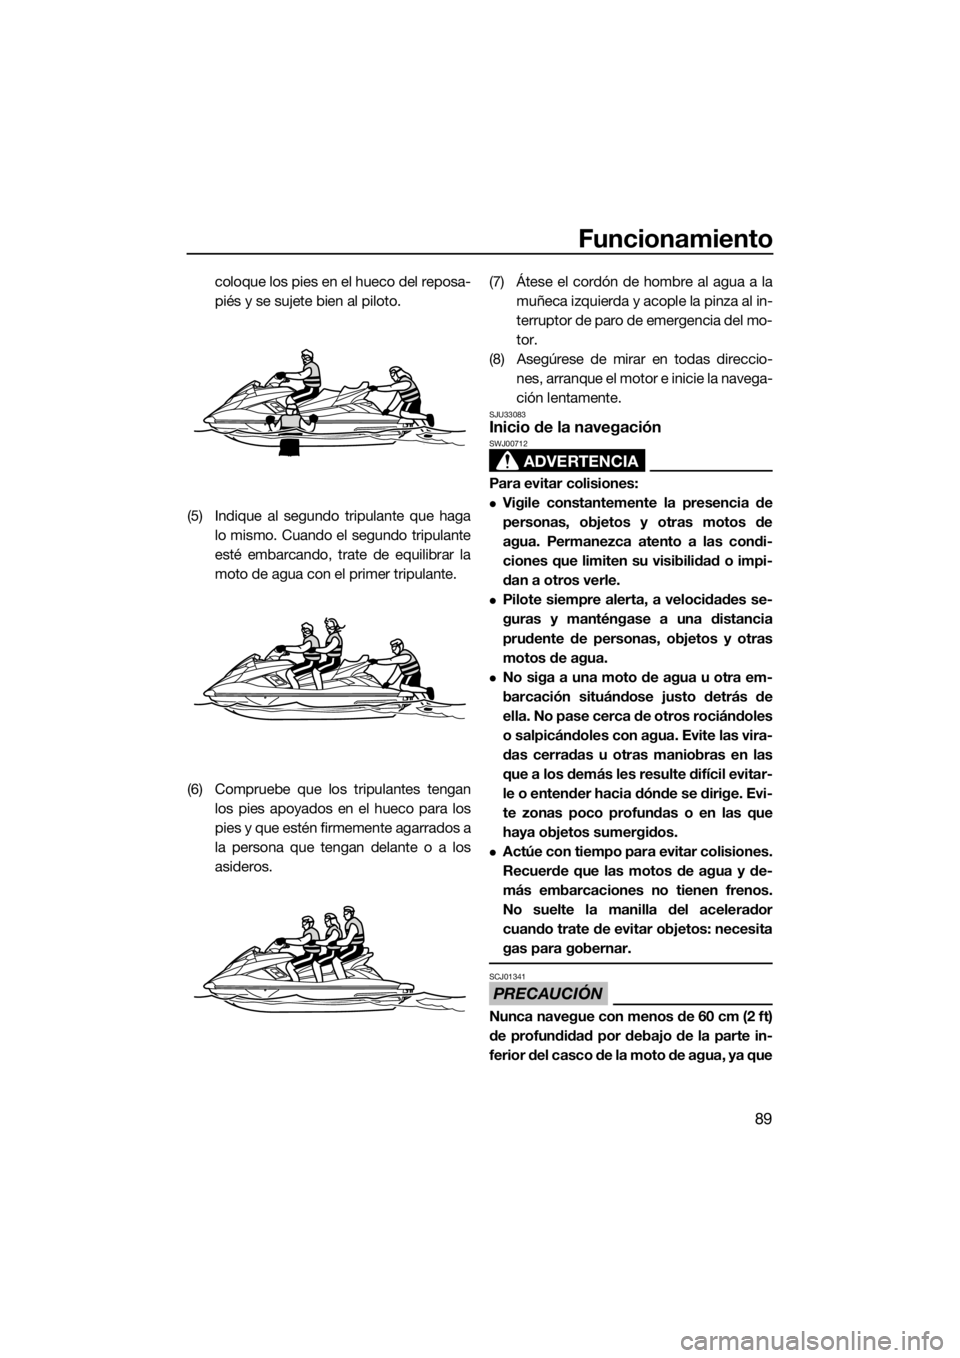 YAMAHA FX HO CRUISER 2015  Manuale de Empleo (in Spanish) Funcionamiento
89
coloque los pies en el hueco del reposa-
piés y se sujete bien al piloto.
(5) Indique al segundo tripulante que haga
lo mismo. Cuando el segundo tripulante
esté embarcando, trate d